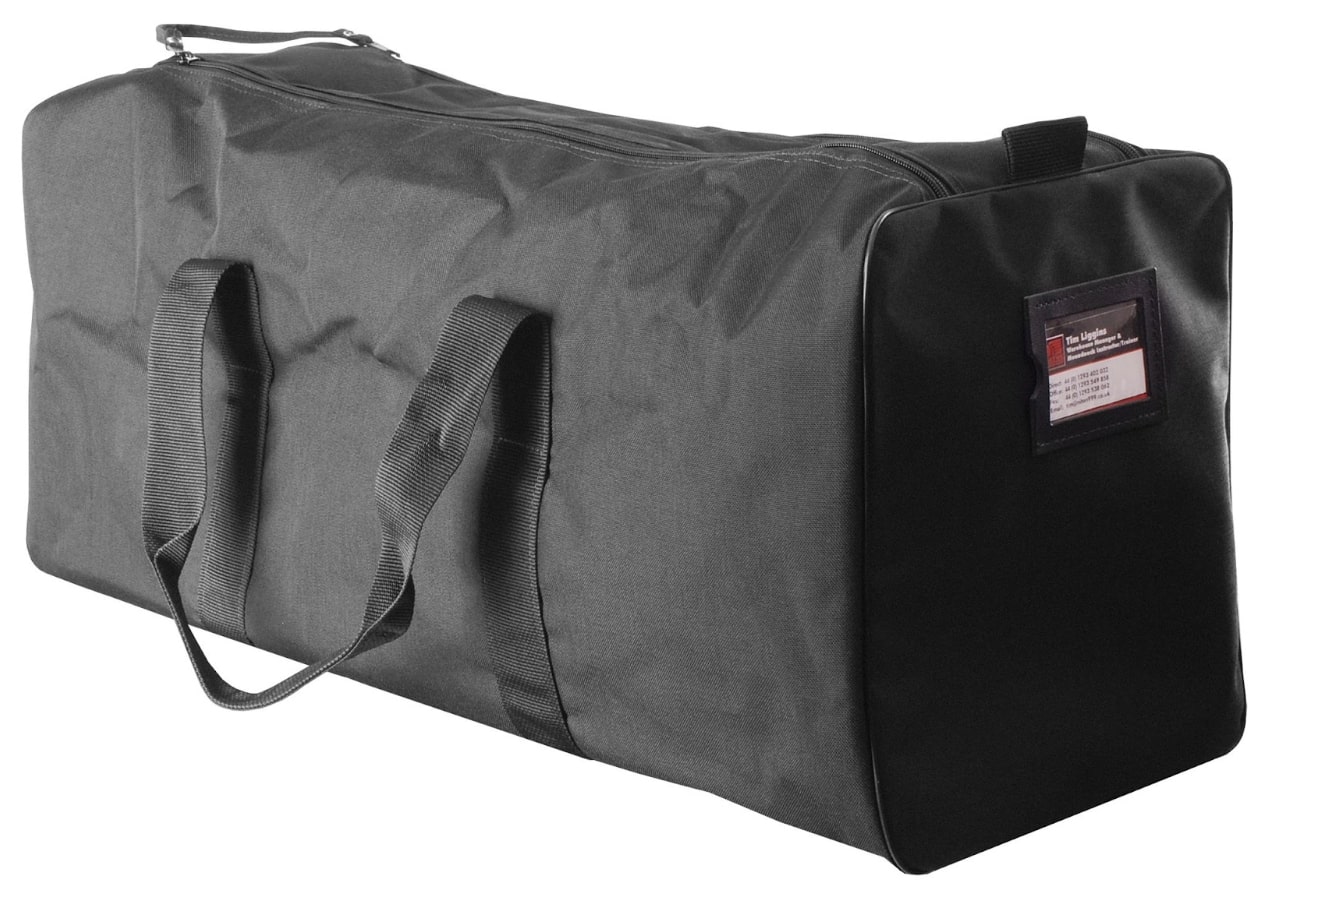 Black niton equipment bag